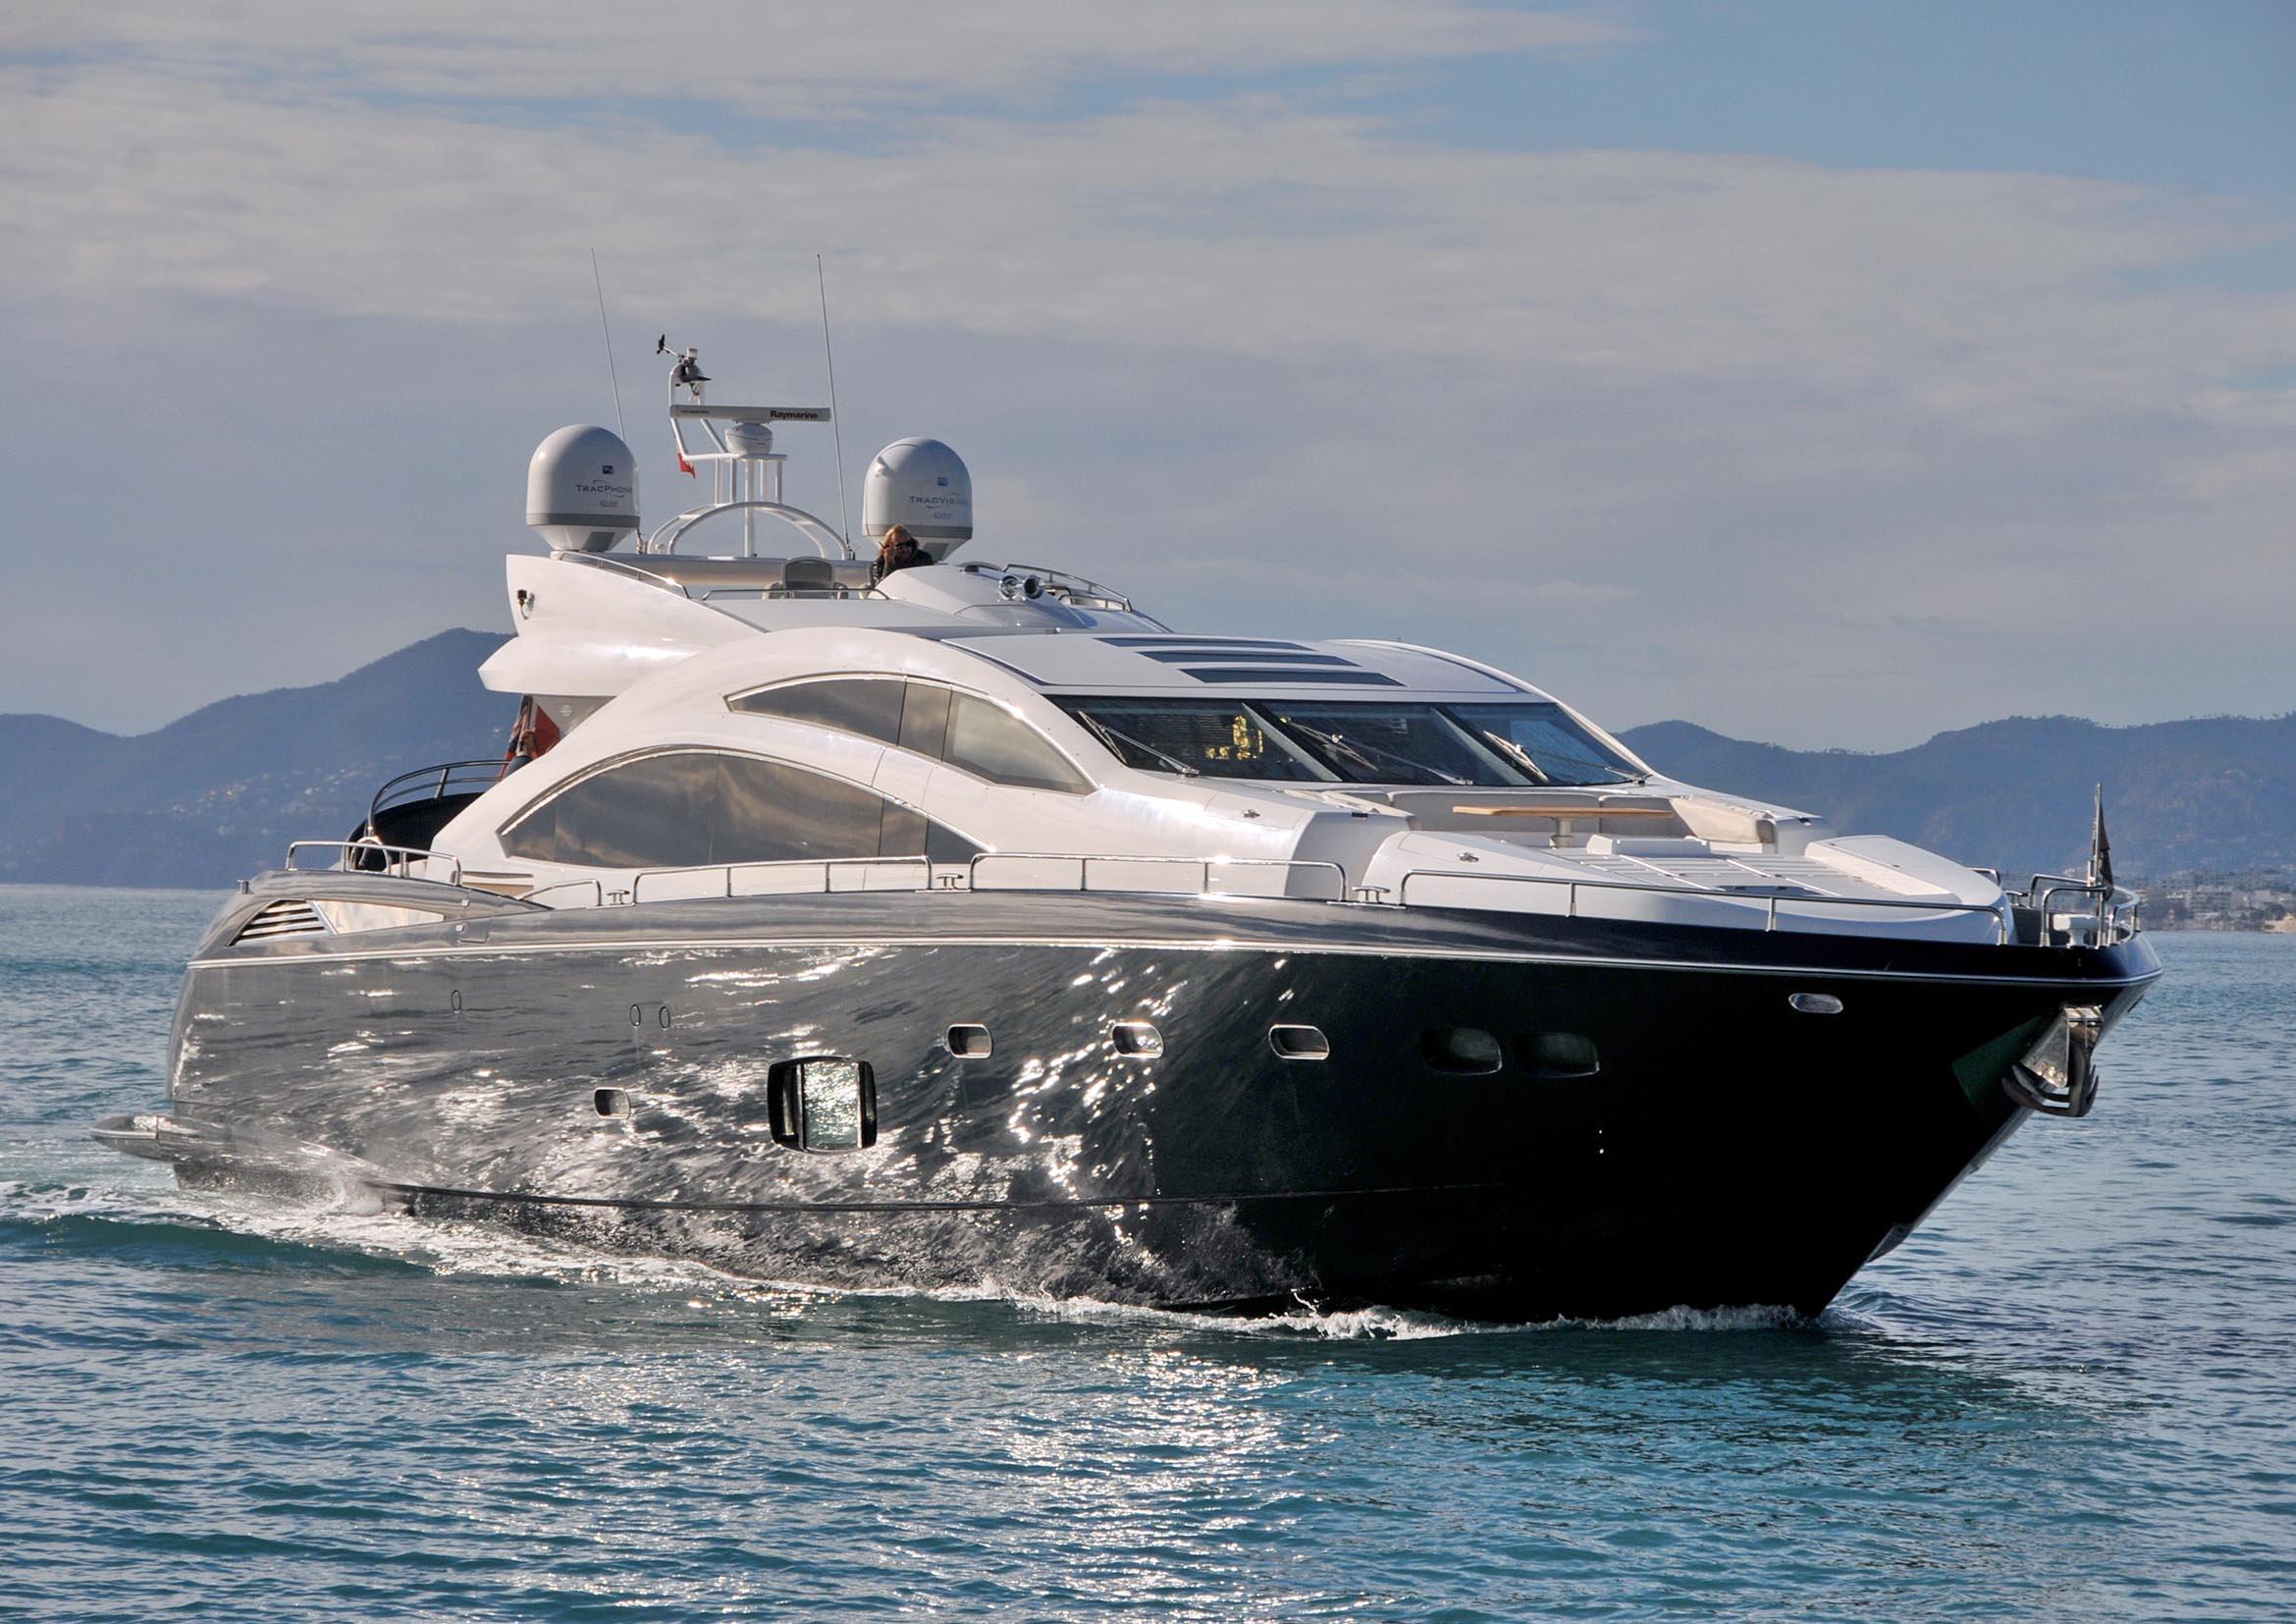 ARIYAS-Sunseeker-Yacht For Charter-Ibiza